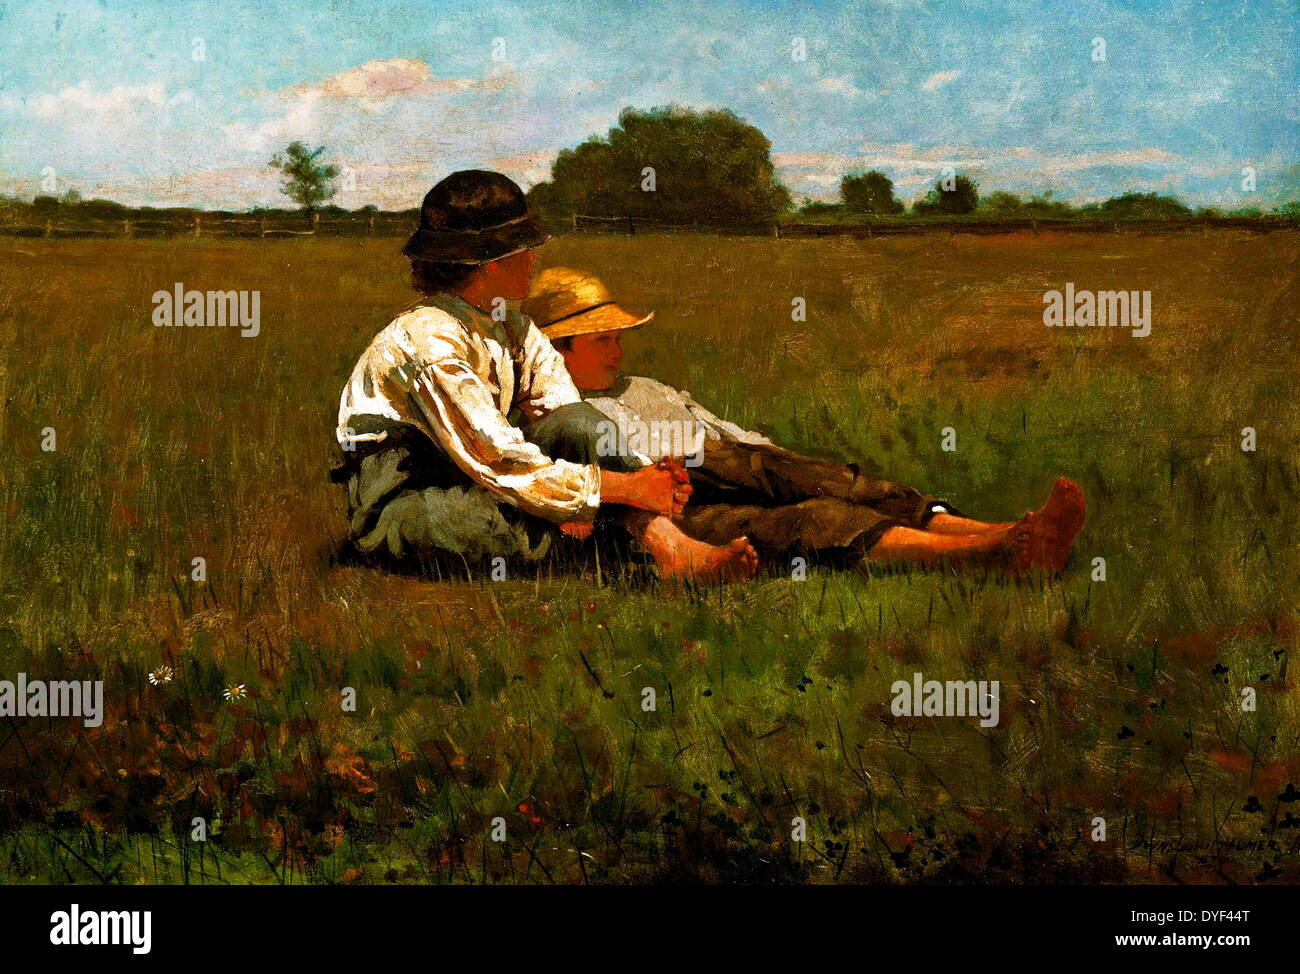 Les garçons dans un pâturage par Winslow Homer. Huile sur toile, fin xixe siècle, début du xxe siècle. L'artiste américain qui a vécu entre 1836-1910. Banque D'Images